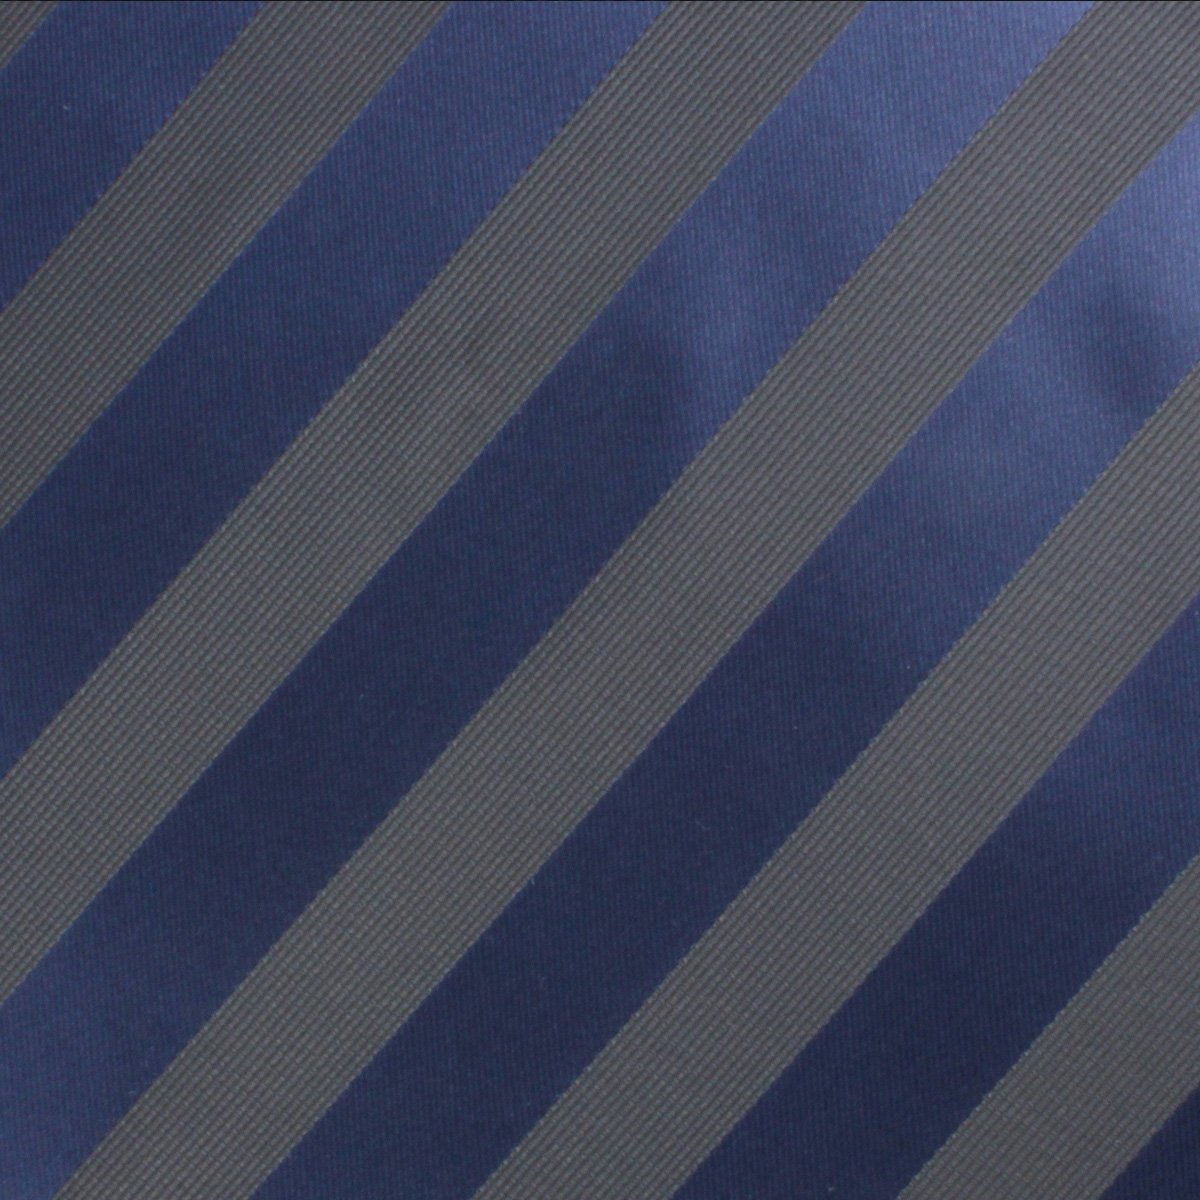 Indigo Blue-Black Striped Pocket Square Fabric